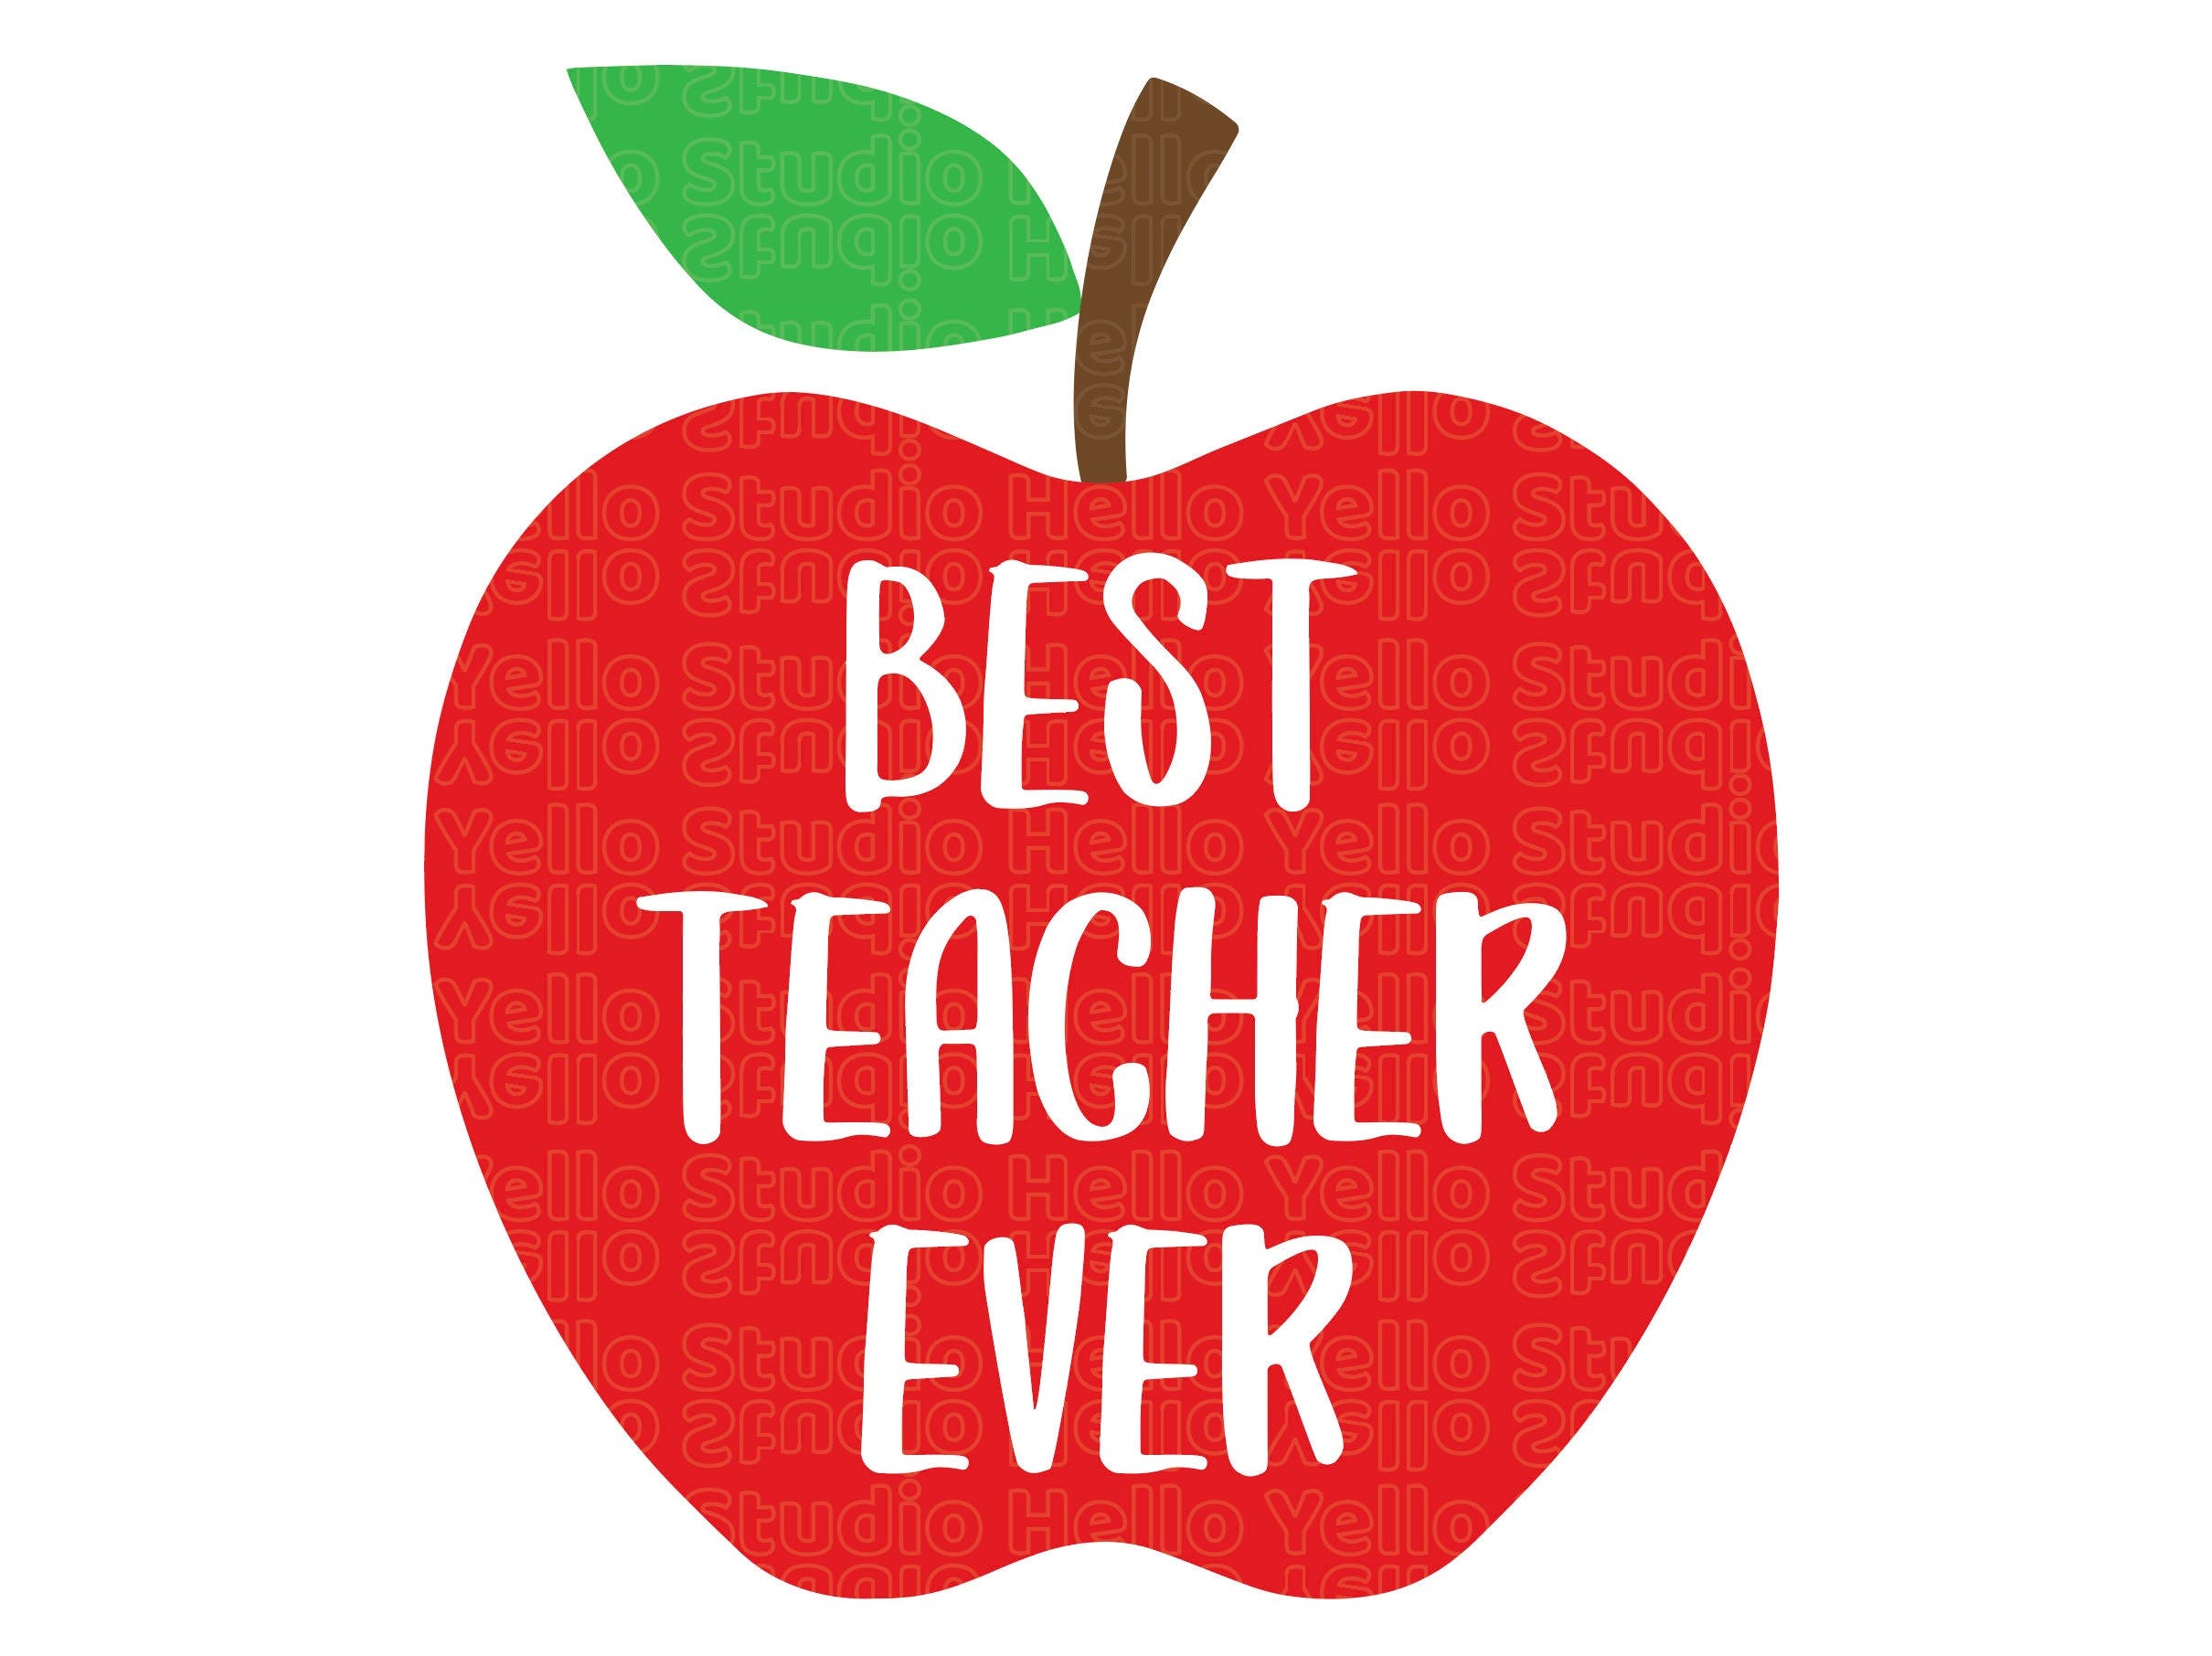 Best Teacher Ever Svg, Teacher Svg, School svg, Teach Svg Teacher Appreciation Teacher Life Teacher Shirt apple svg png Cut files for Cricut